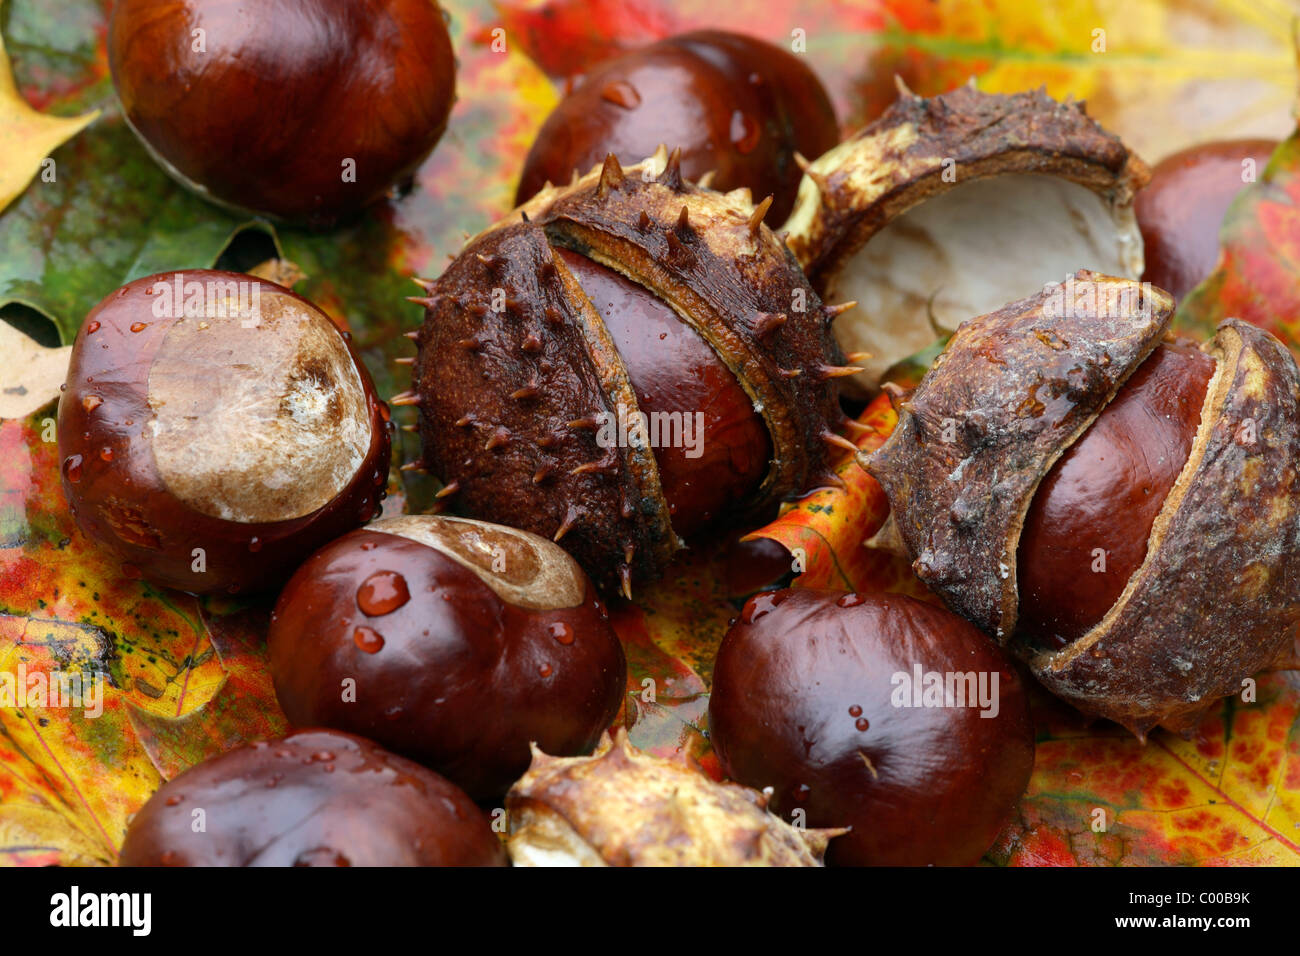 Gemeine Rosskastanien, Fruechte, Aesculus hippocastanum, Horse chestnut, Fruits Stock Photo